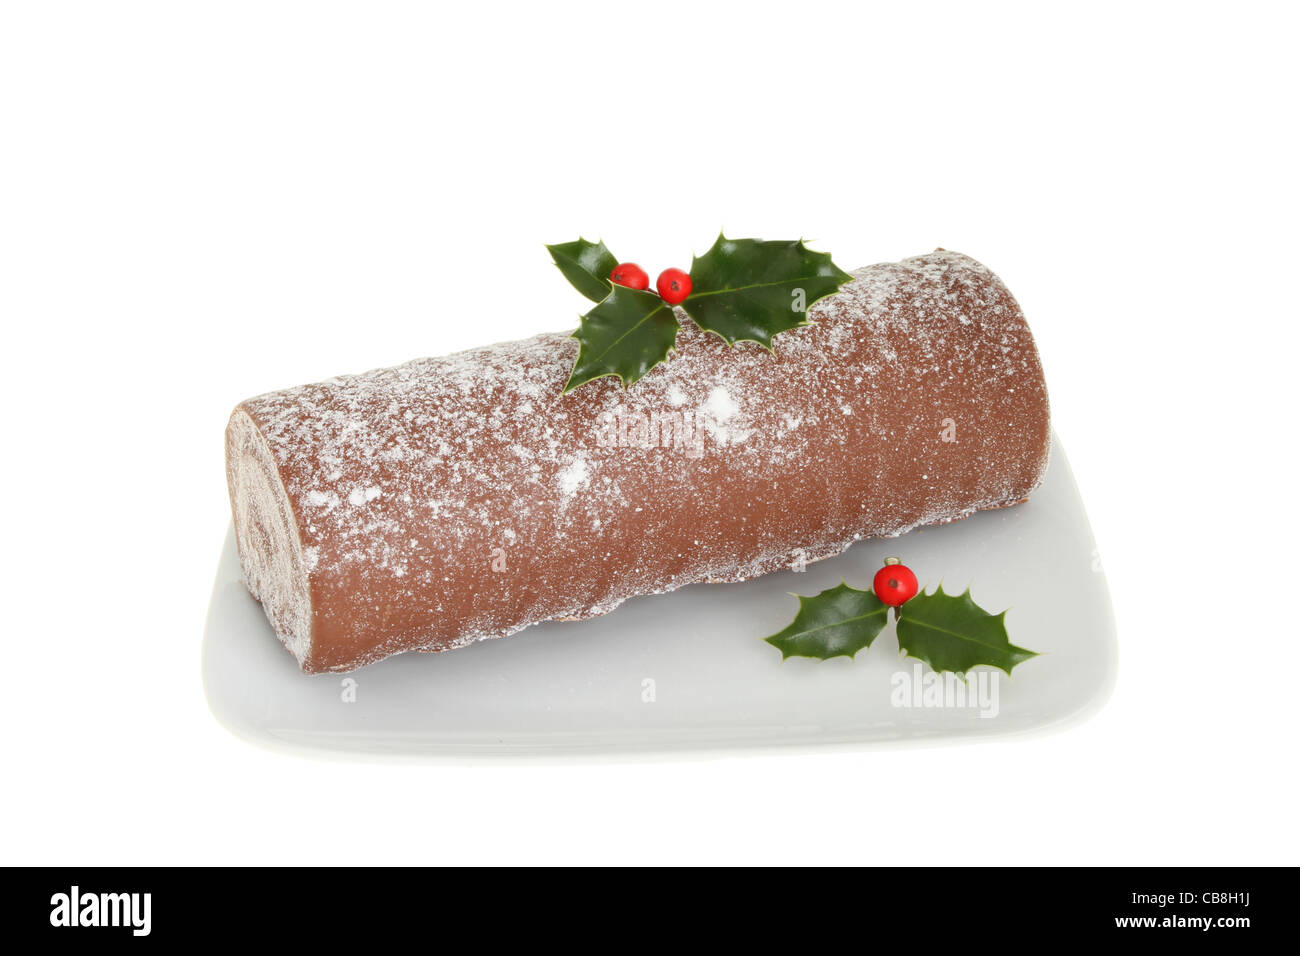 Natale registro di cioccolato decorate con holly su una piastra isolata contro bianco Foto Stock